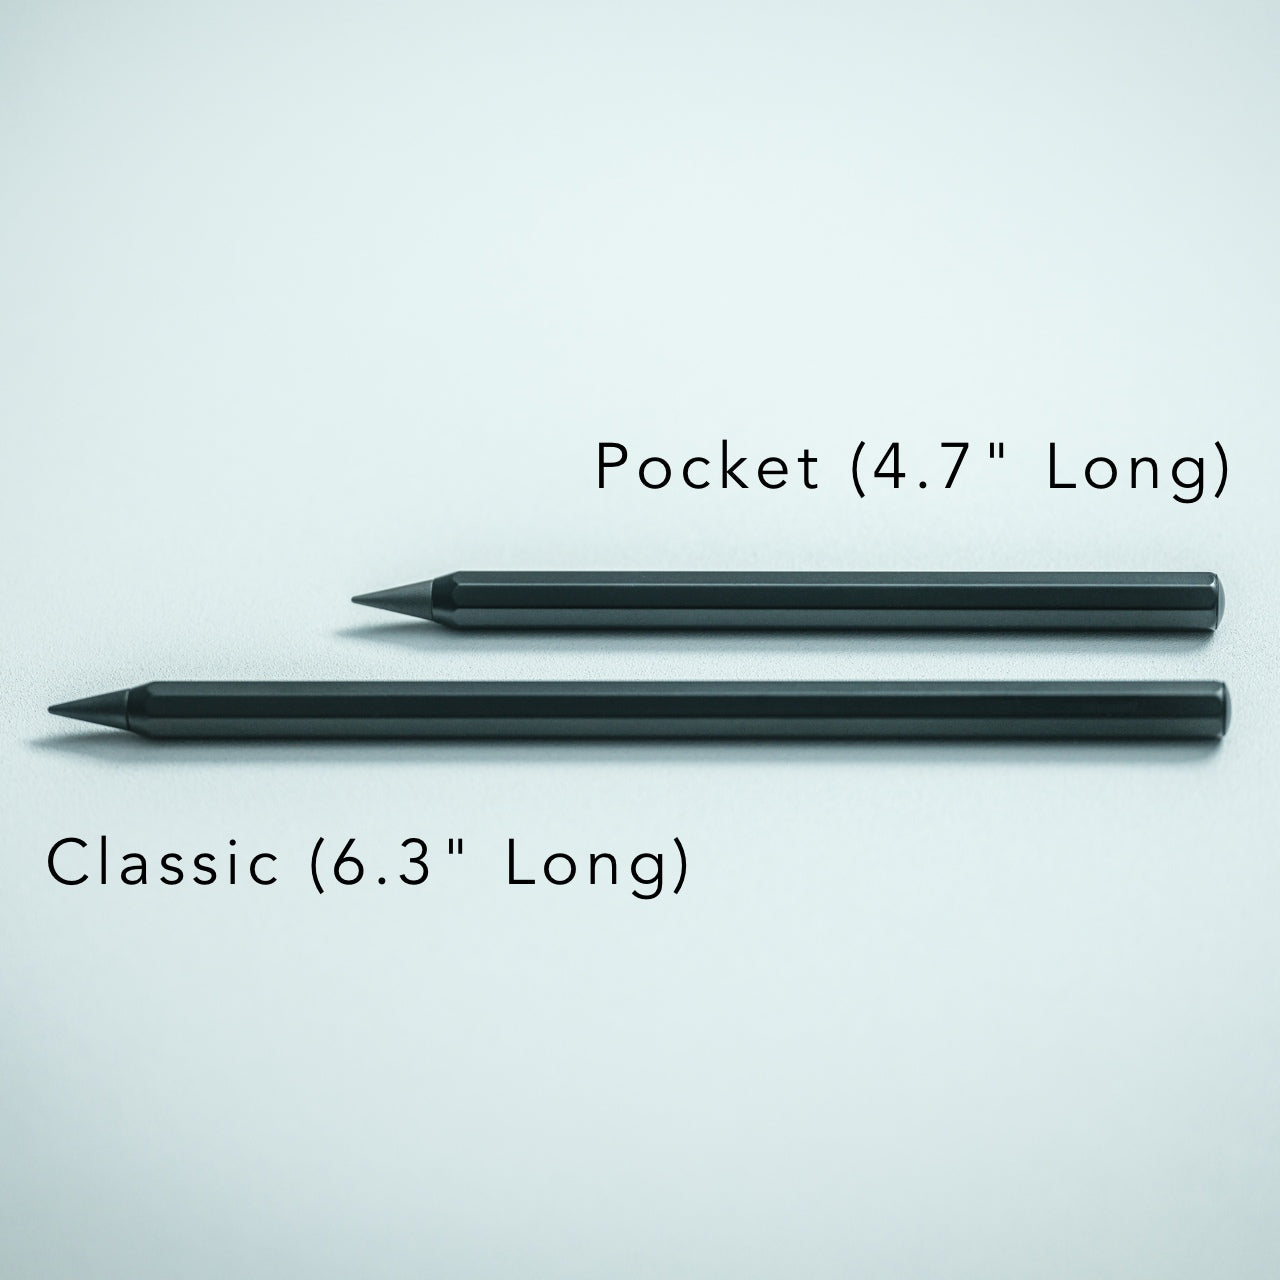 Everlasting All-Metal Pencil – Yanko Design Select